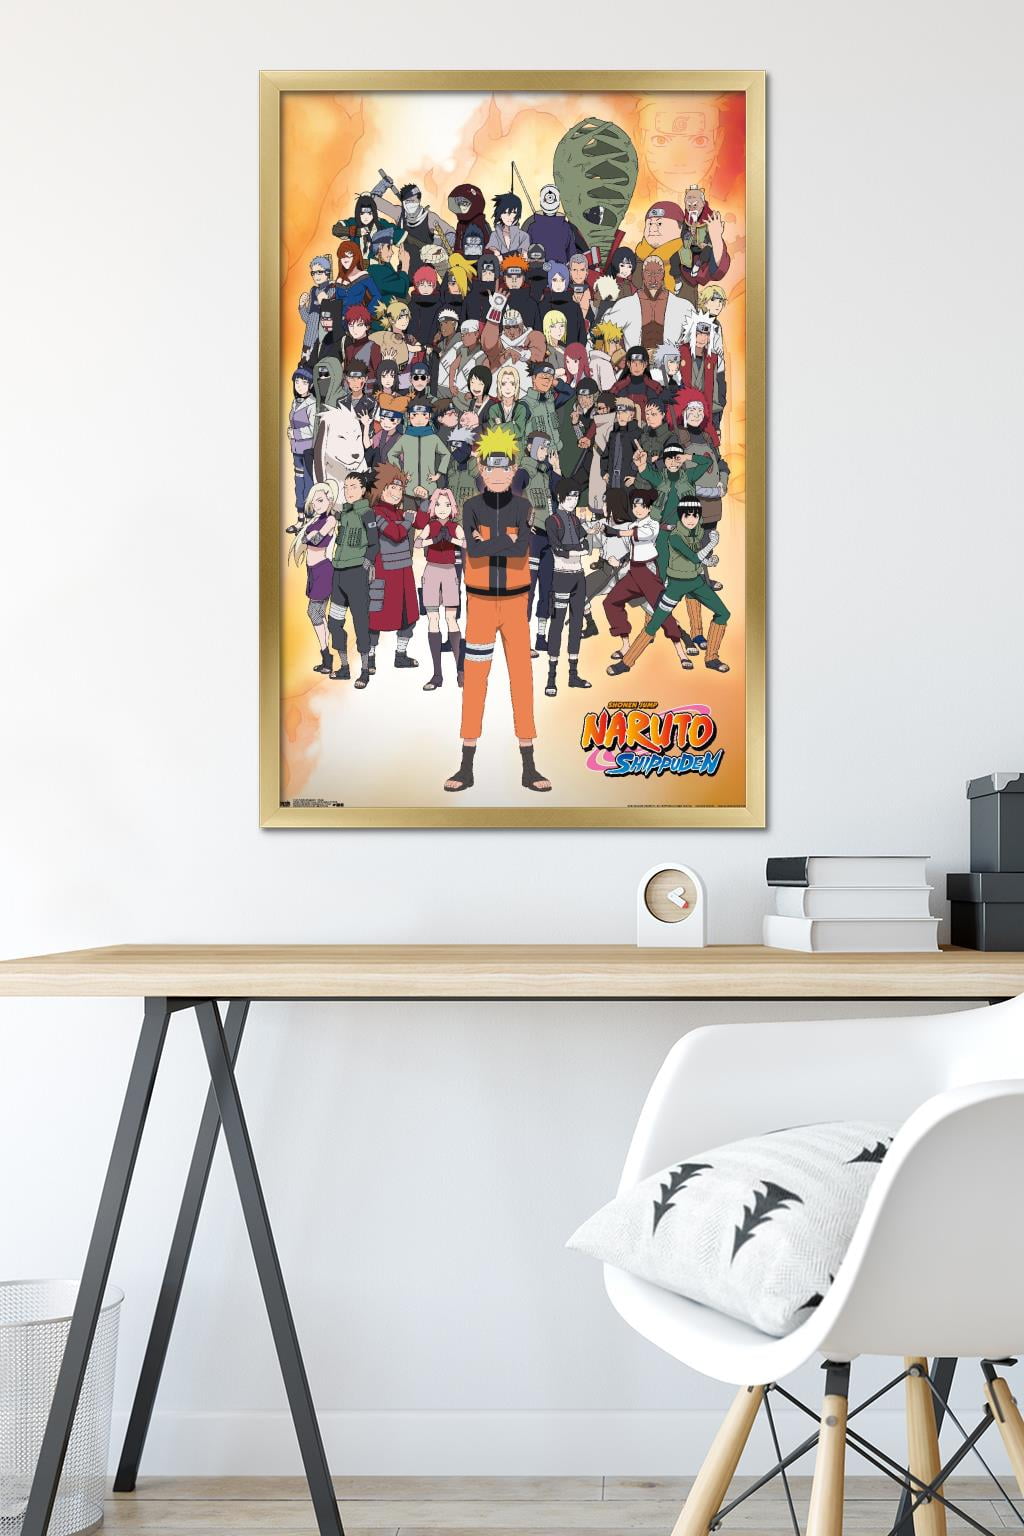 Naruto - Green Wall Poster, 22.375 x 34